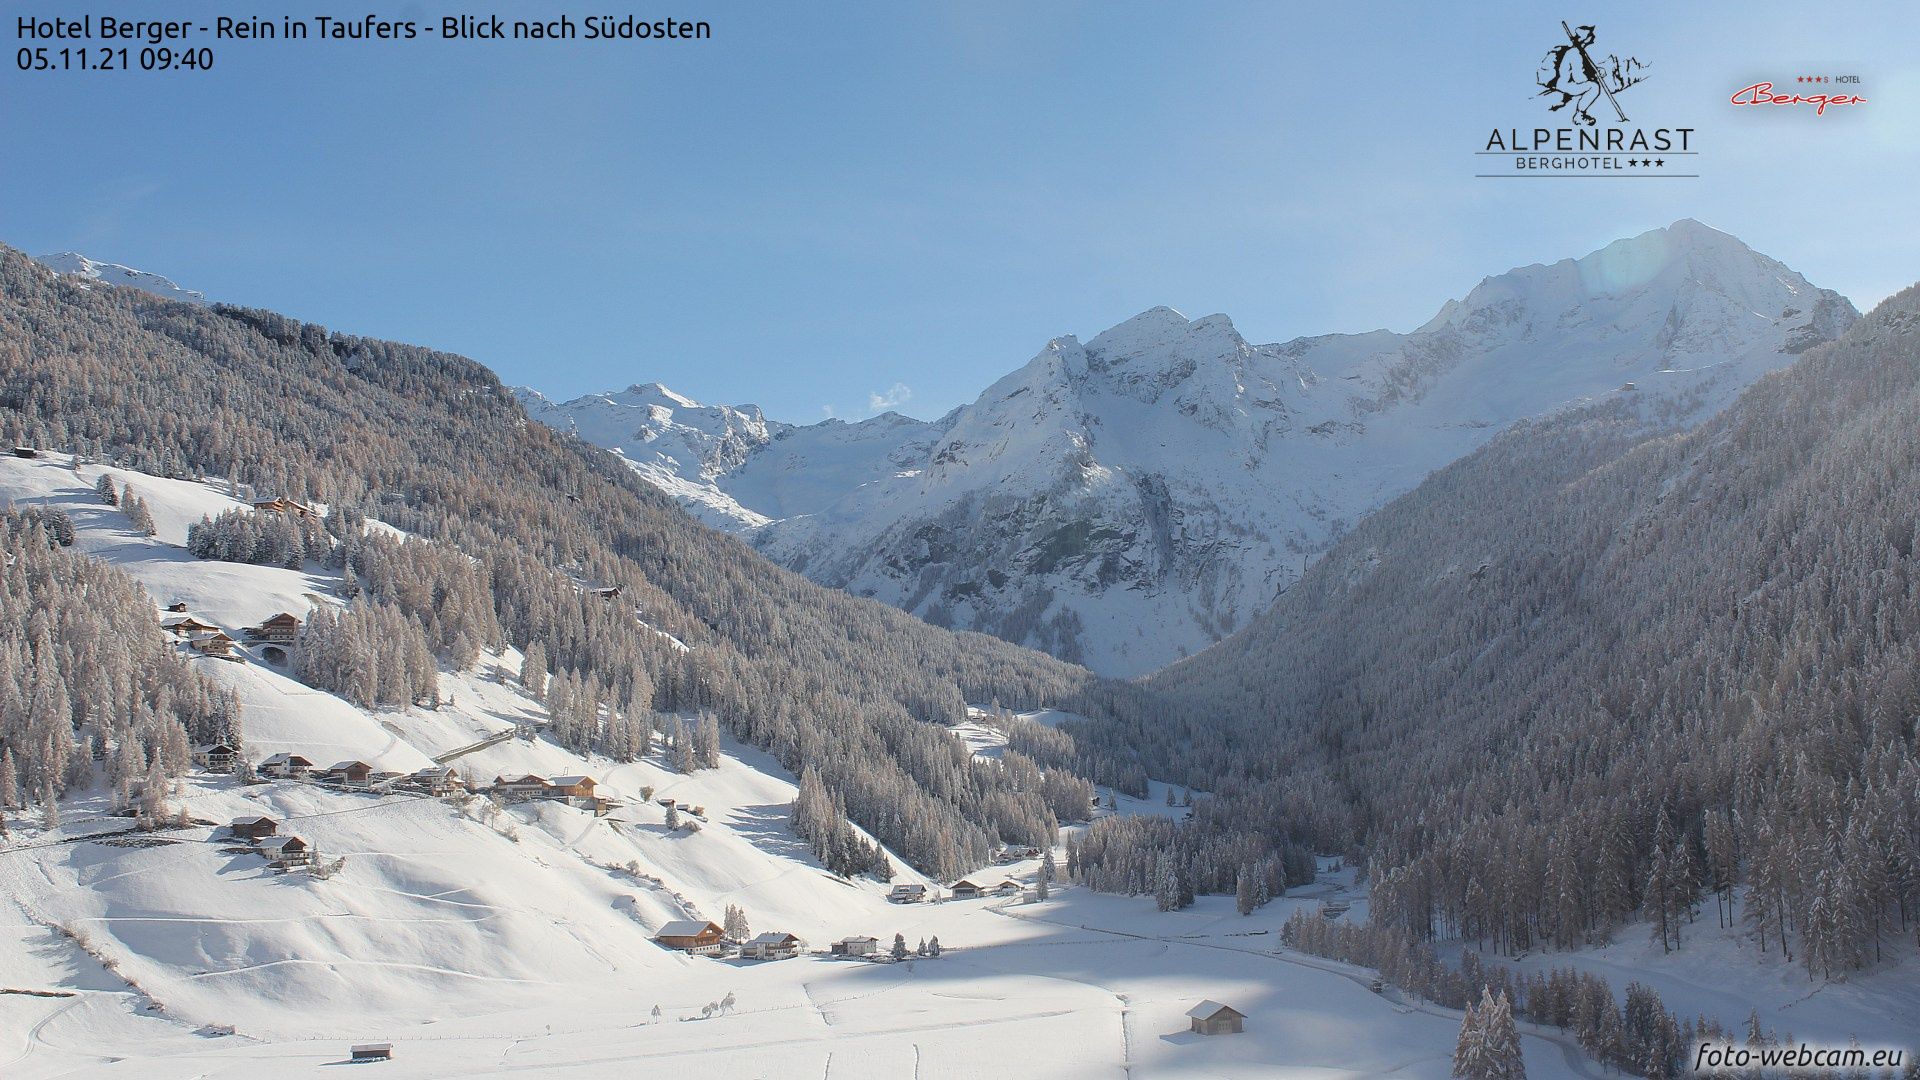 Zonnige en winterse condities tot in de hooggelegen dalen deze ochtend, zoals hier in Rein in Taufers (foto-webcam.eu)